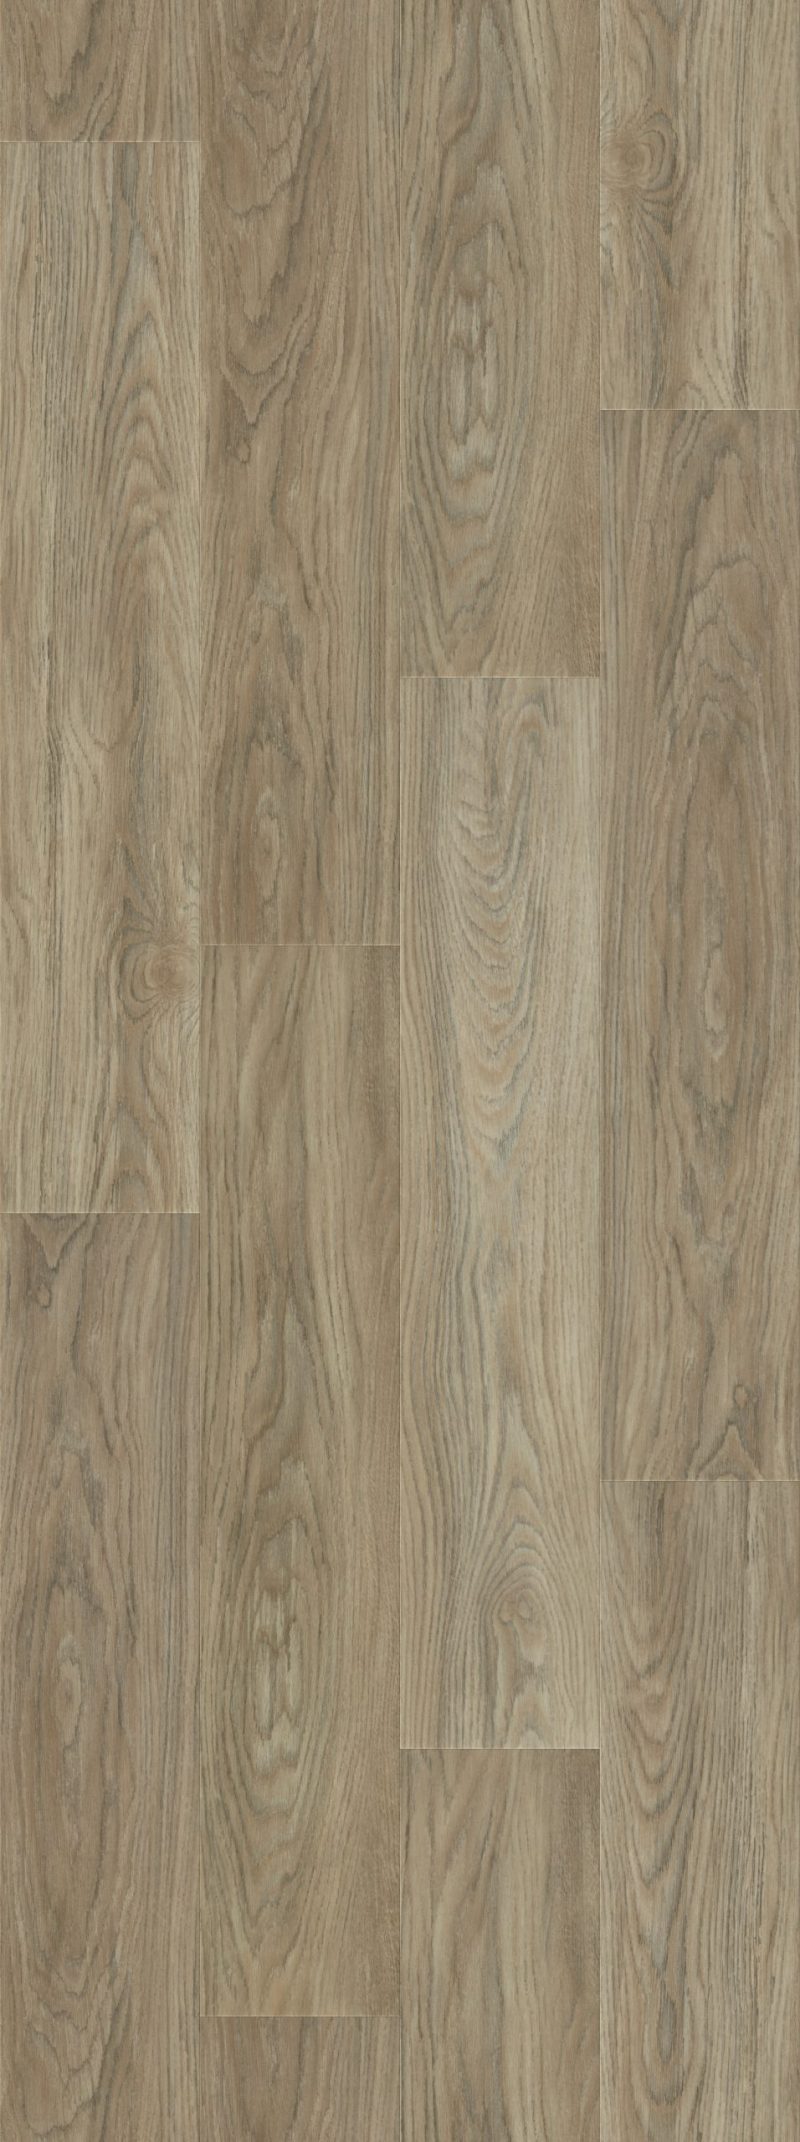 Vinilinės grindys lentelėmis Forbo Allura Wood natural weathered oak